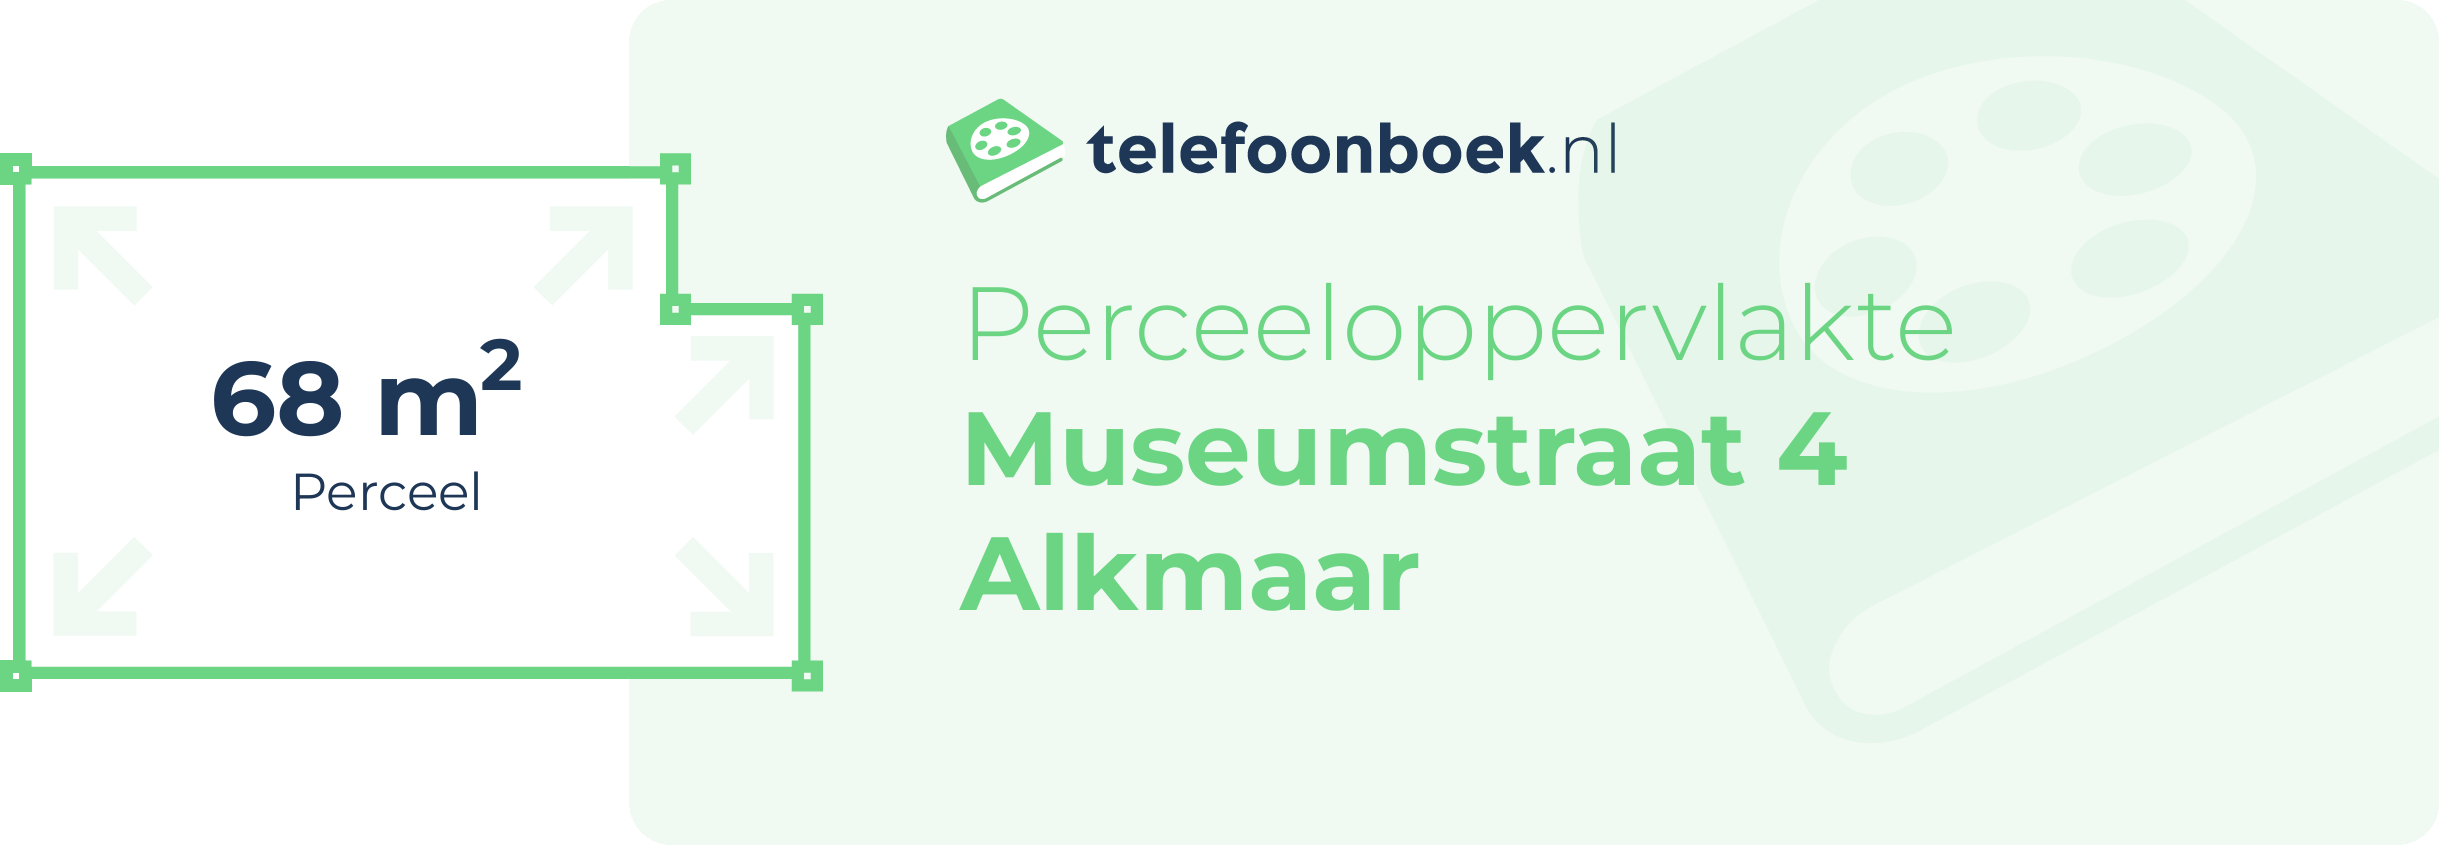 Perceeloppervlakte Museumstraat 4 Alkmaar